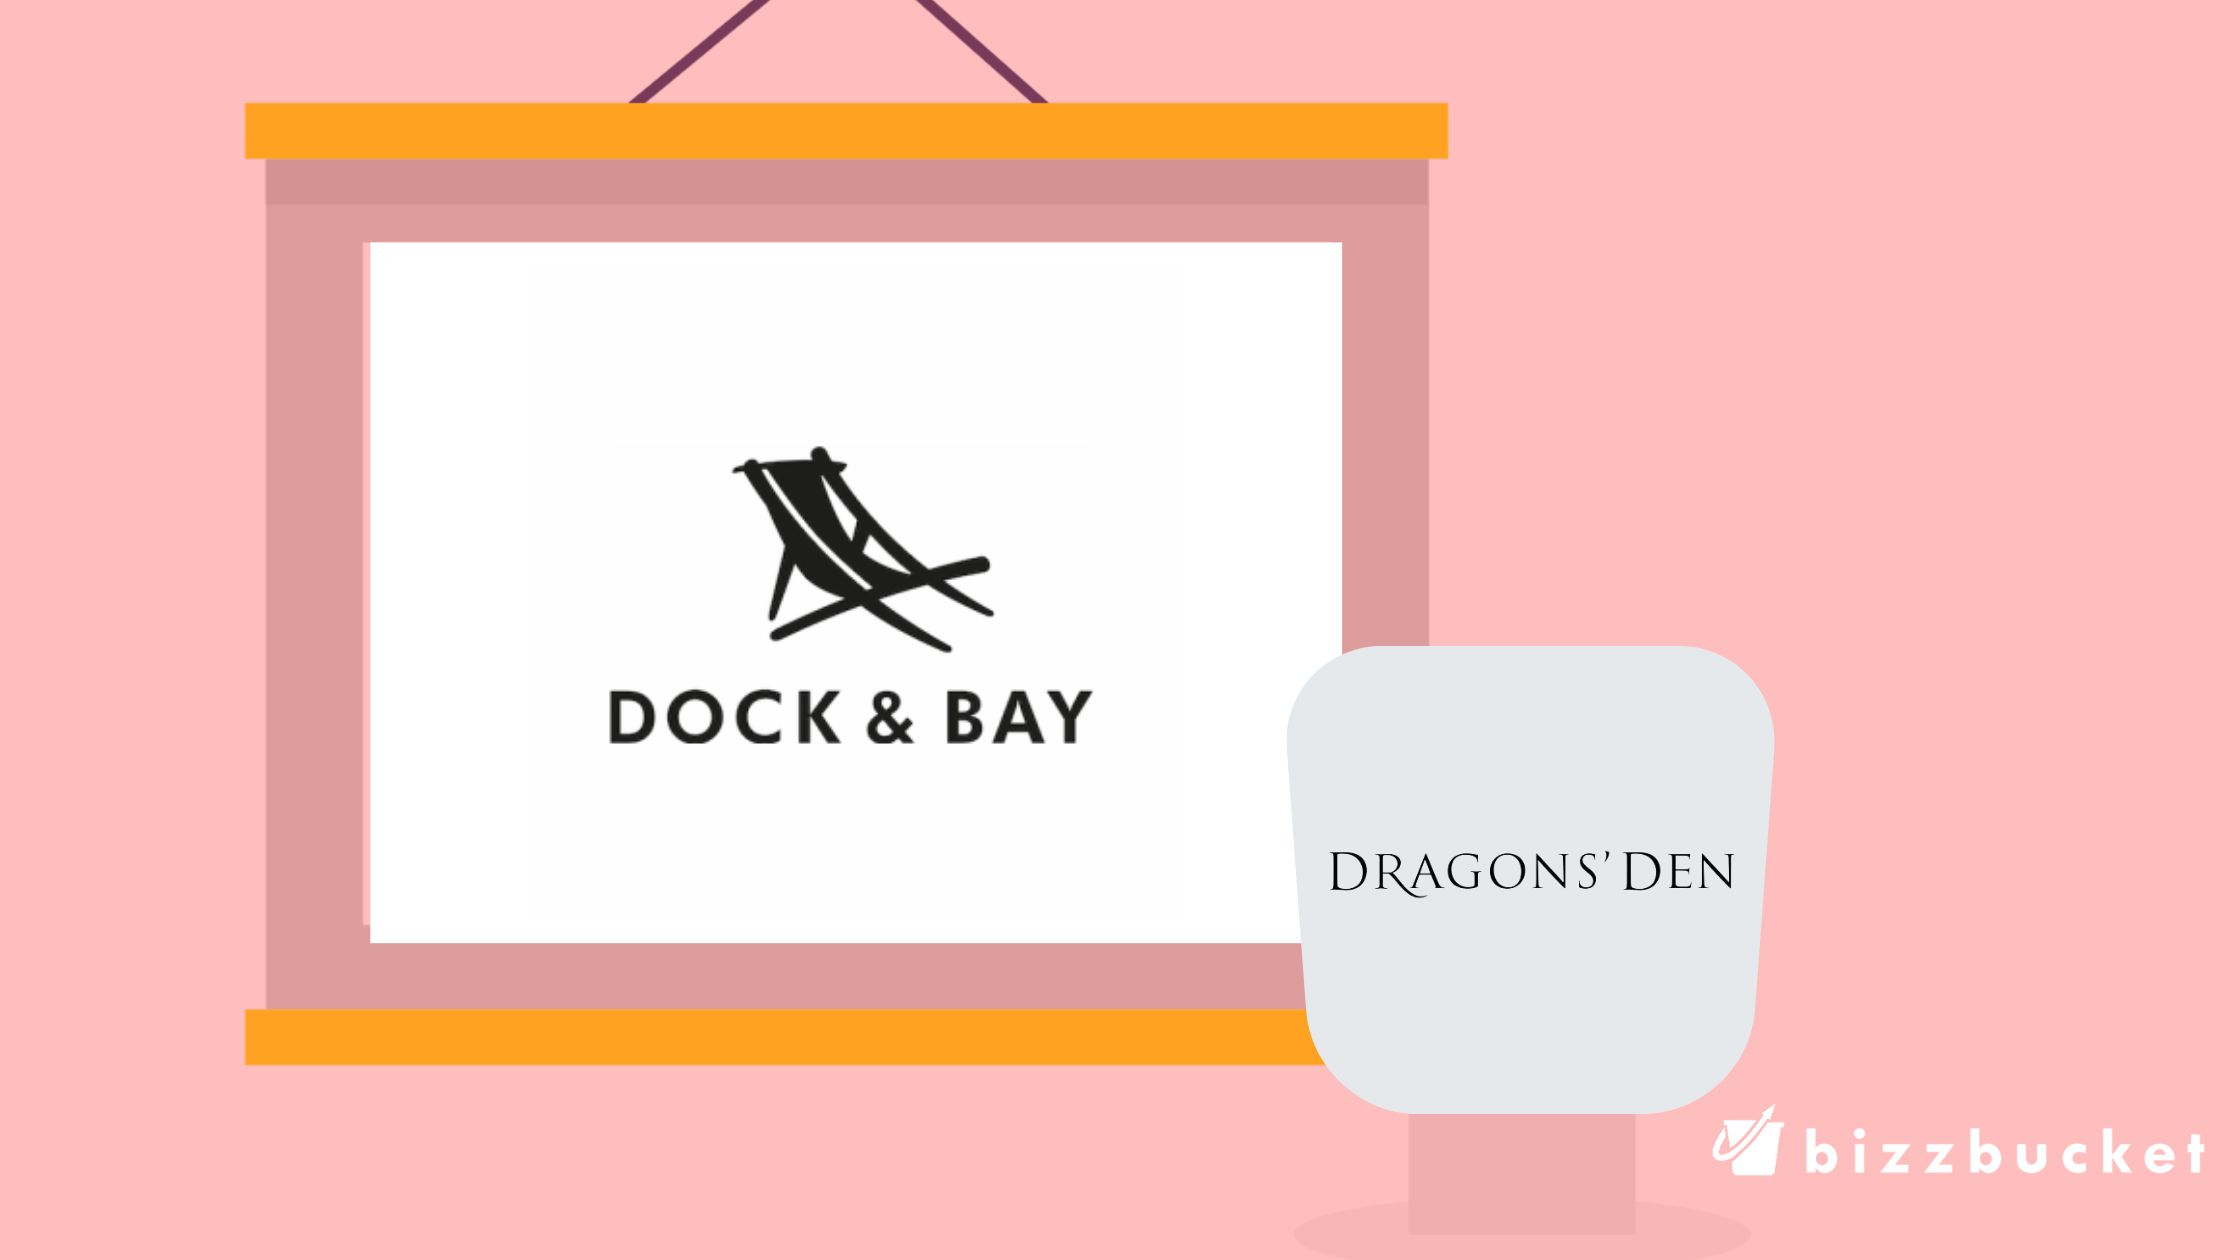 Dock & Bay Dragons’ Den